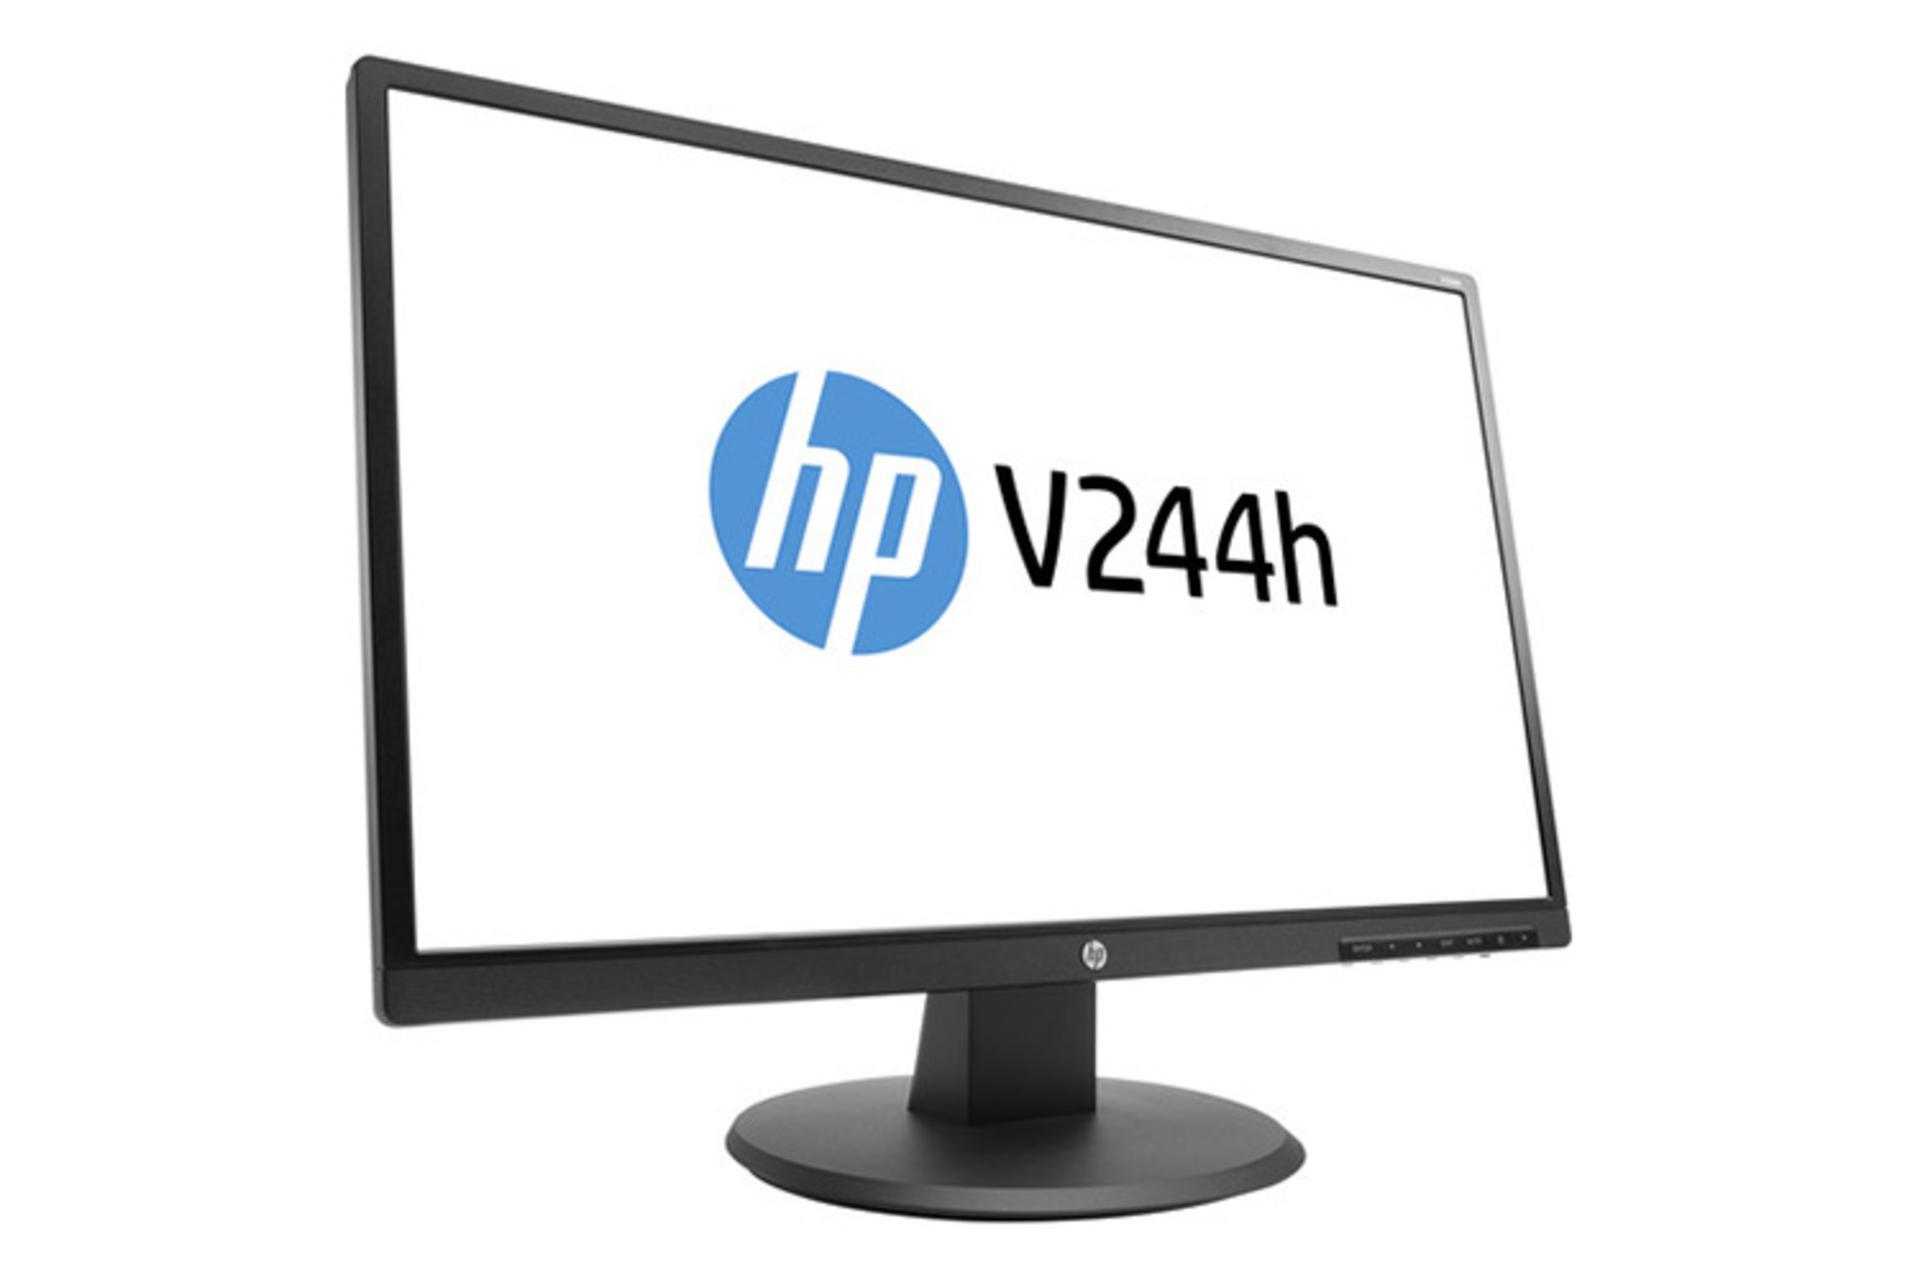 HP V244h